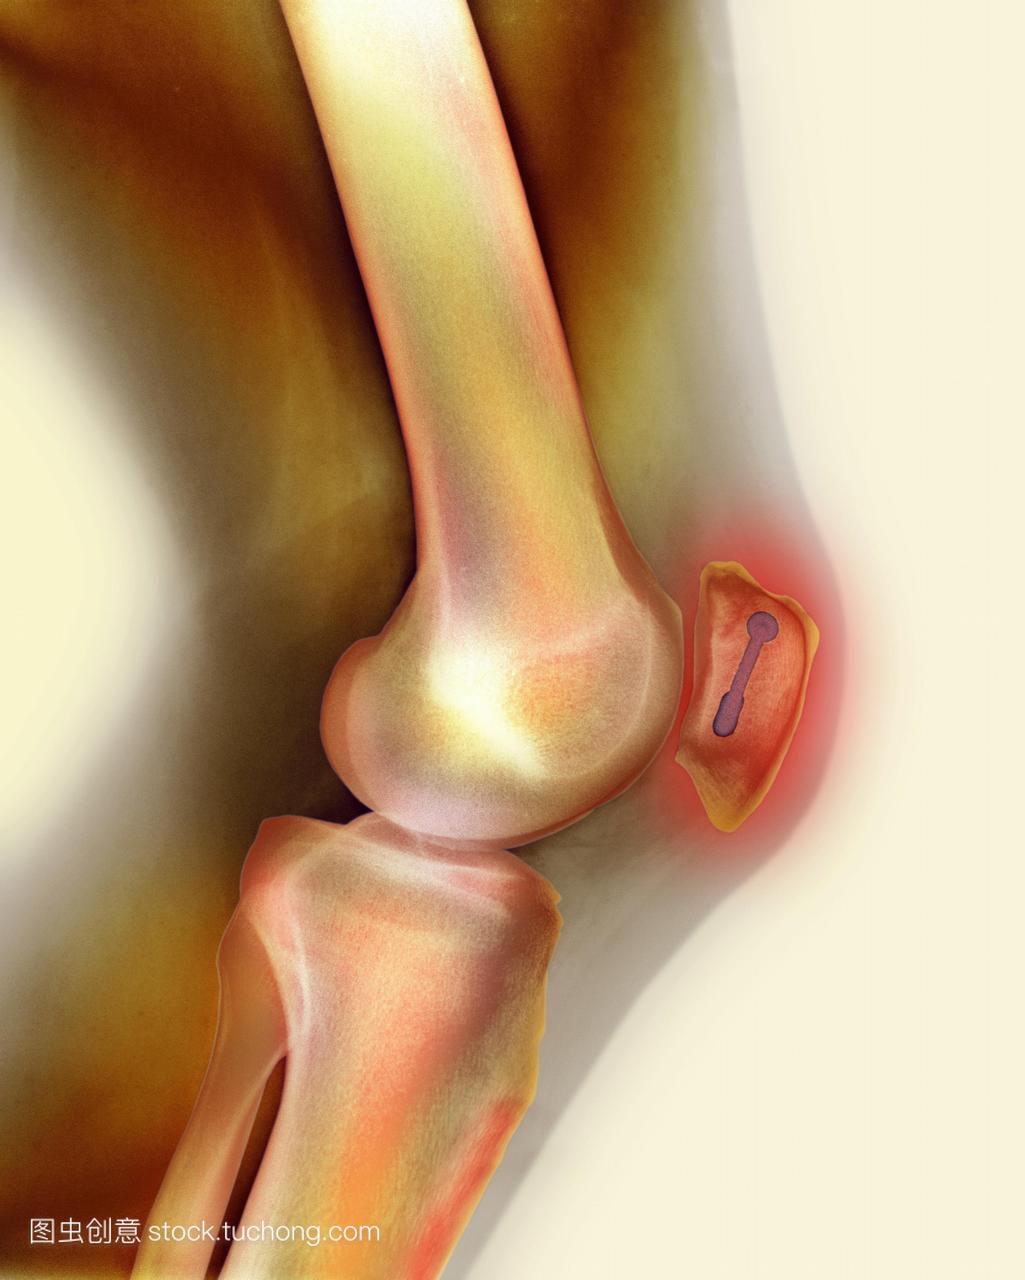 固定的膝盖骨骨折。彩色的x射线的销灰色中心